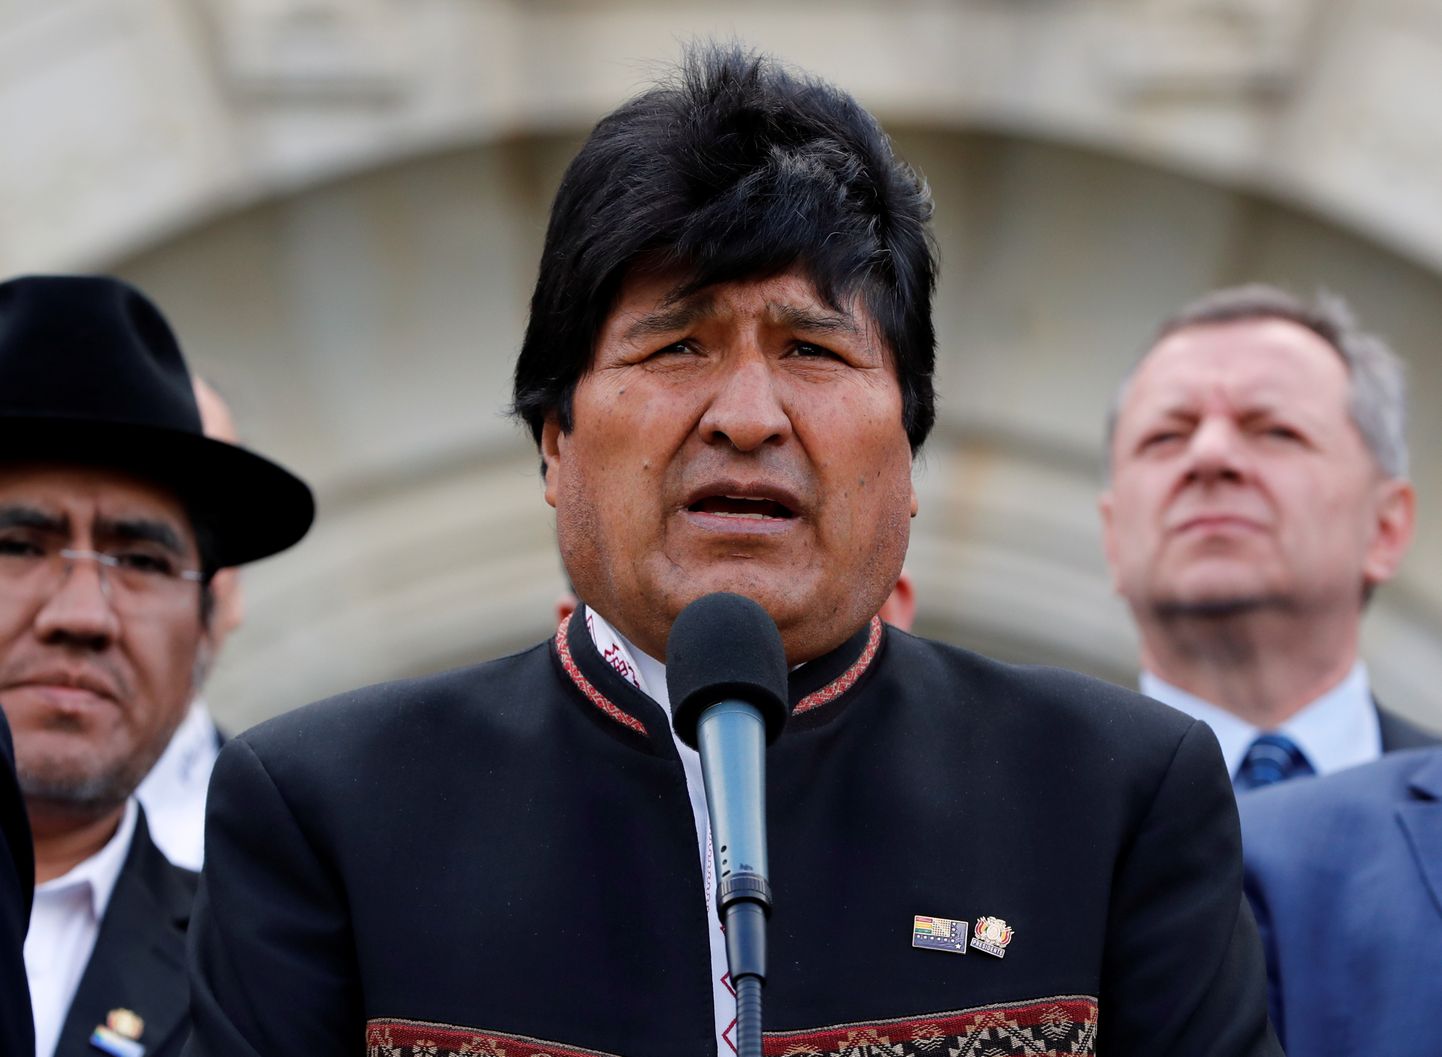 Bolīvijas prezidents Evo Moraless pēc tiesas sēdes par Bolīvijas piekļuvi Klusajam okeānam